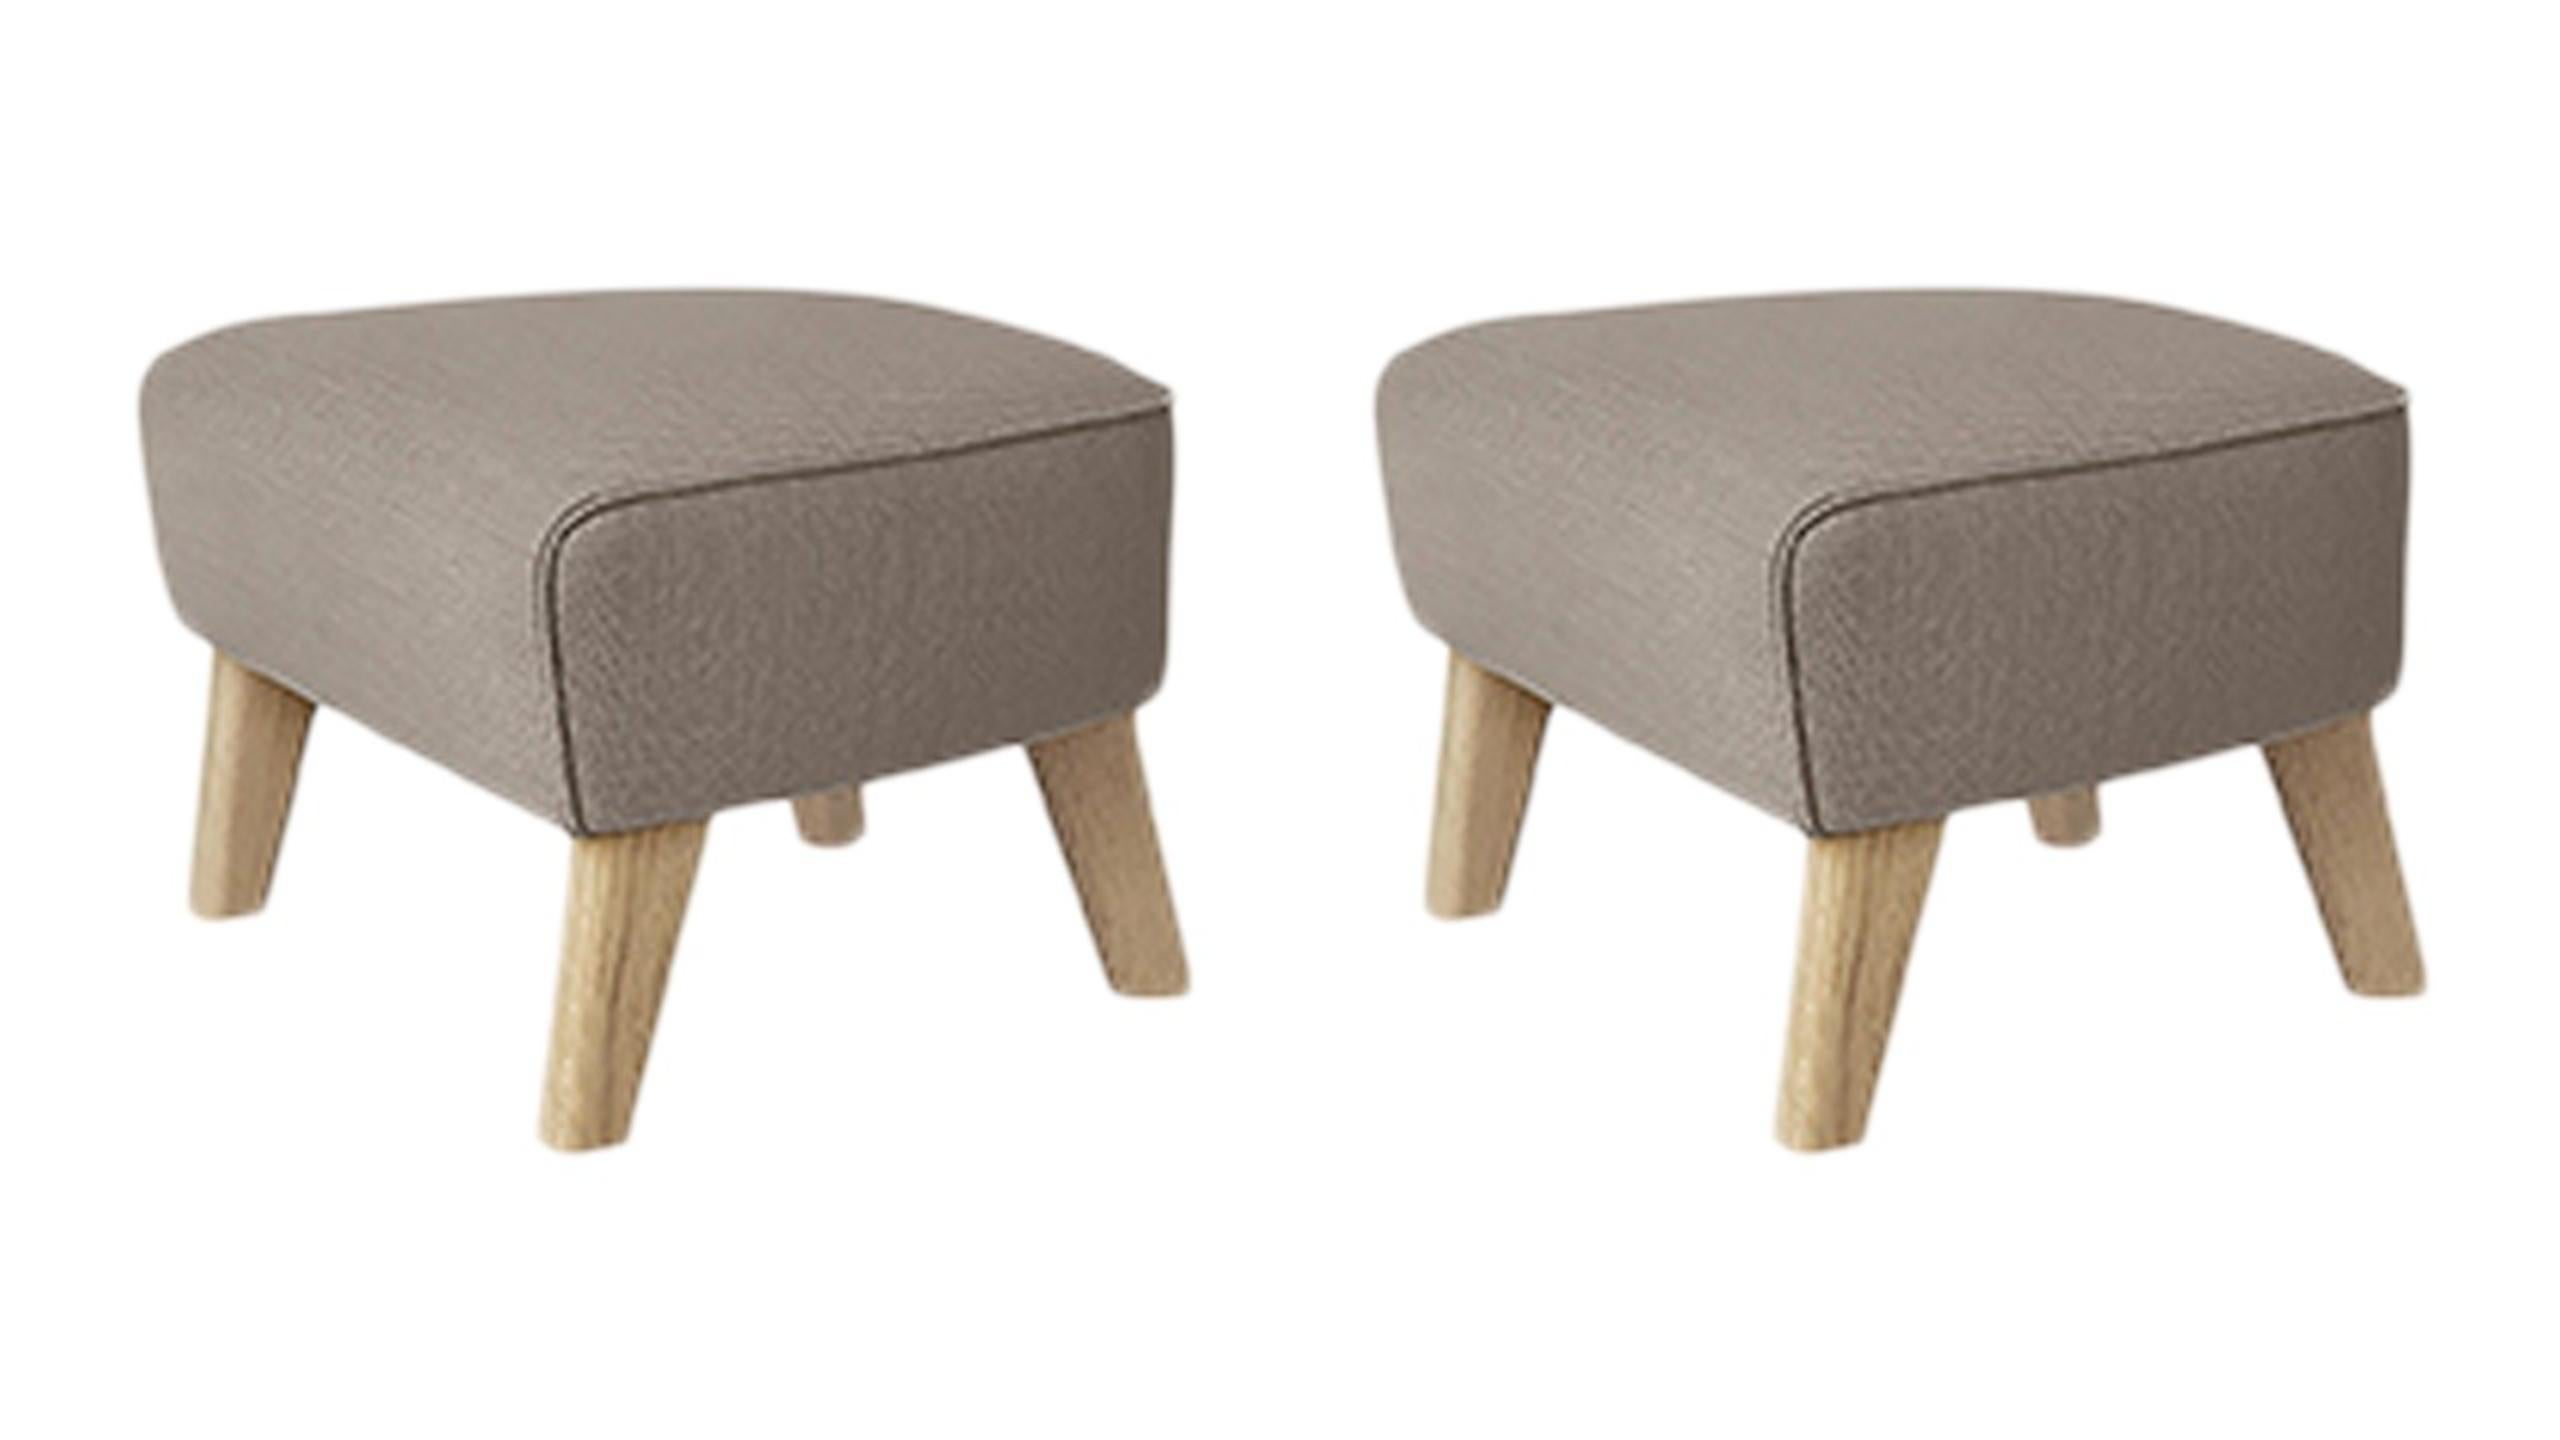 RafSimonsVidar - Ensemble de 2 tabourets de chaise en chêne naturel beige clair « My Own Chair » par Lassen
Dimensions : L 56 x P 58 x H 40 cm 
Matériaux : Textile
Également disponible : Autres couleurs disponibles, veuillez nous contacter.

Le pouf